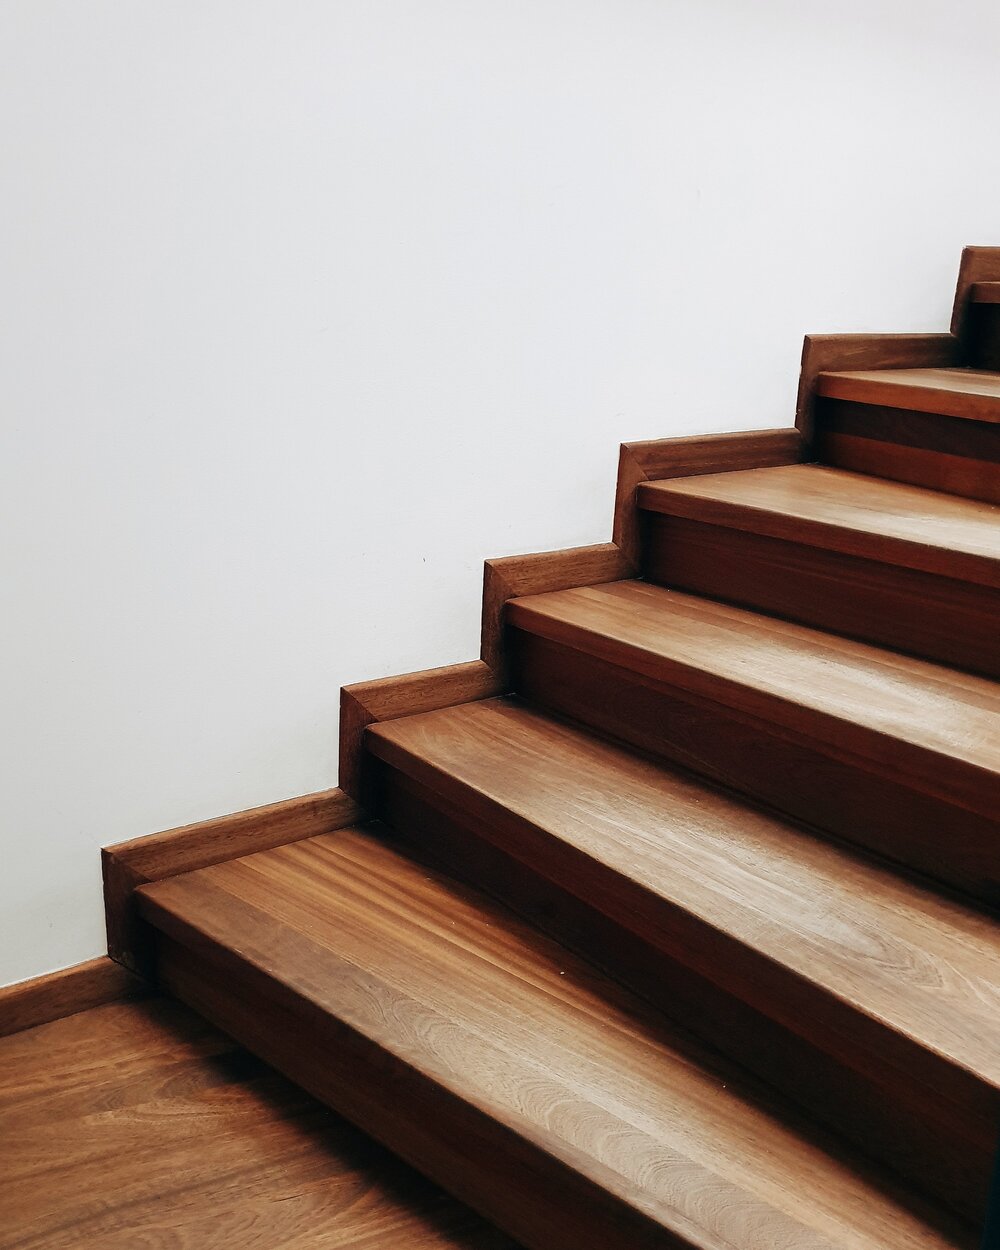 Diy Stair Makeover Carpet To Hardwood, Converting Stairs From Carpet To Hardwood Flooring